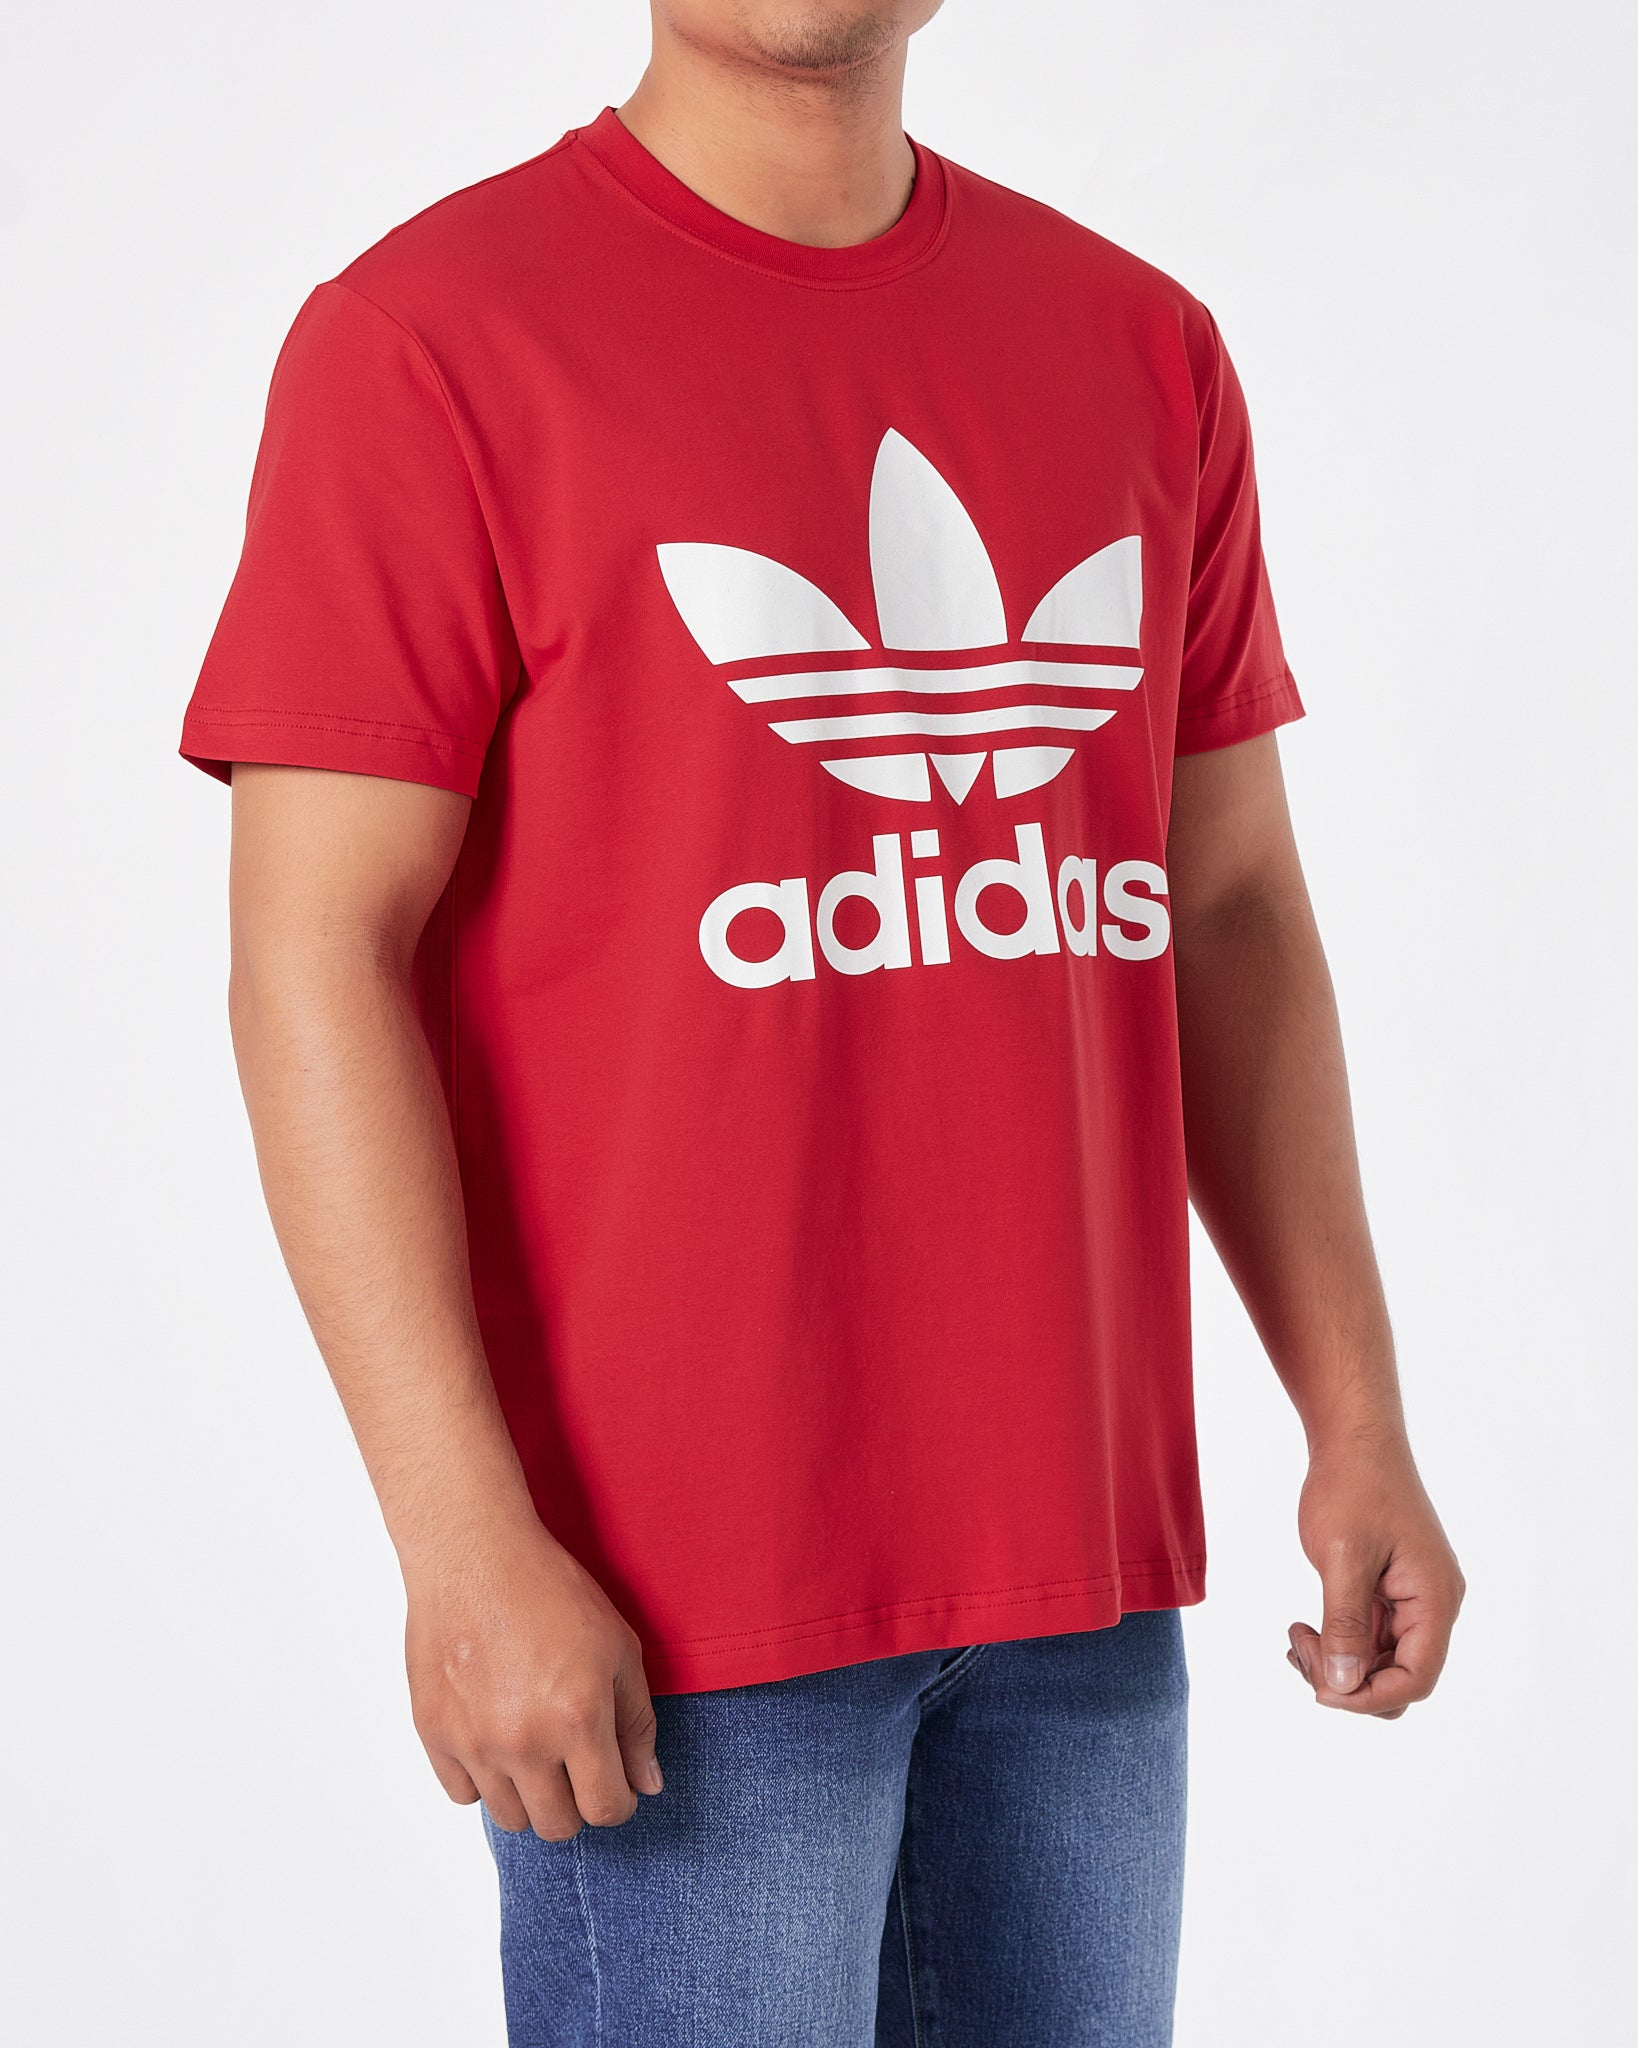 ADI Trefoil Men Red T-Shirt 15.90